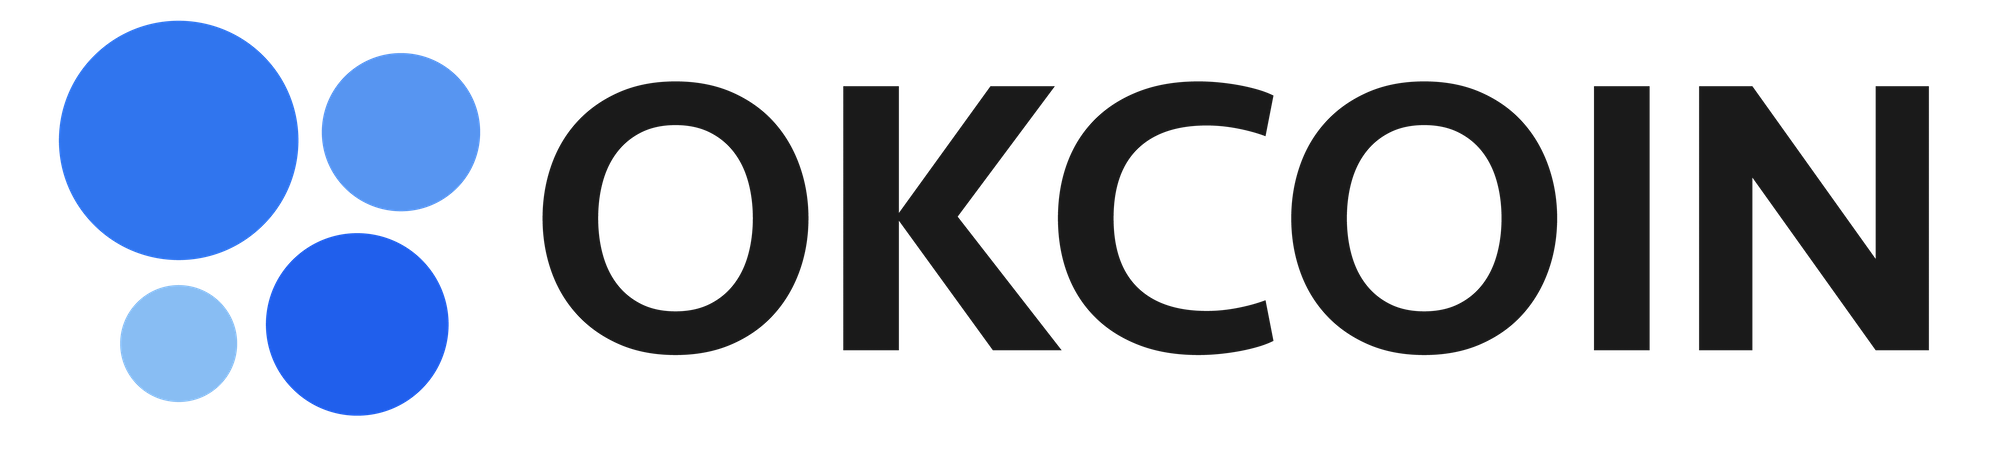 Buy Maker in Congo - OKCOIN